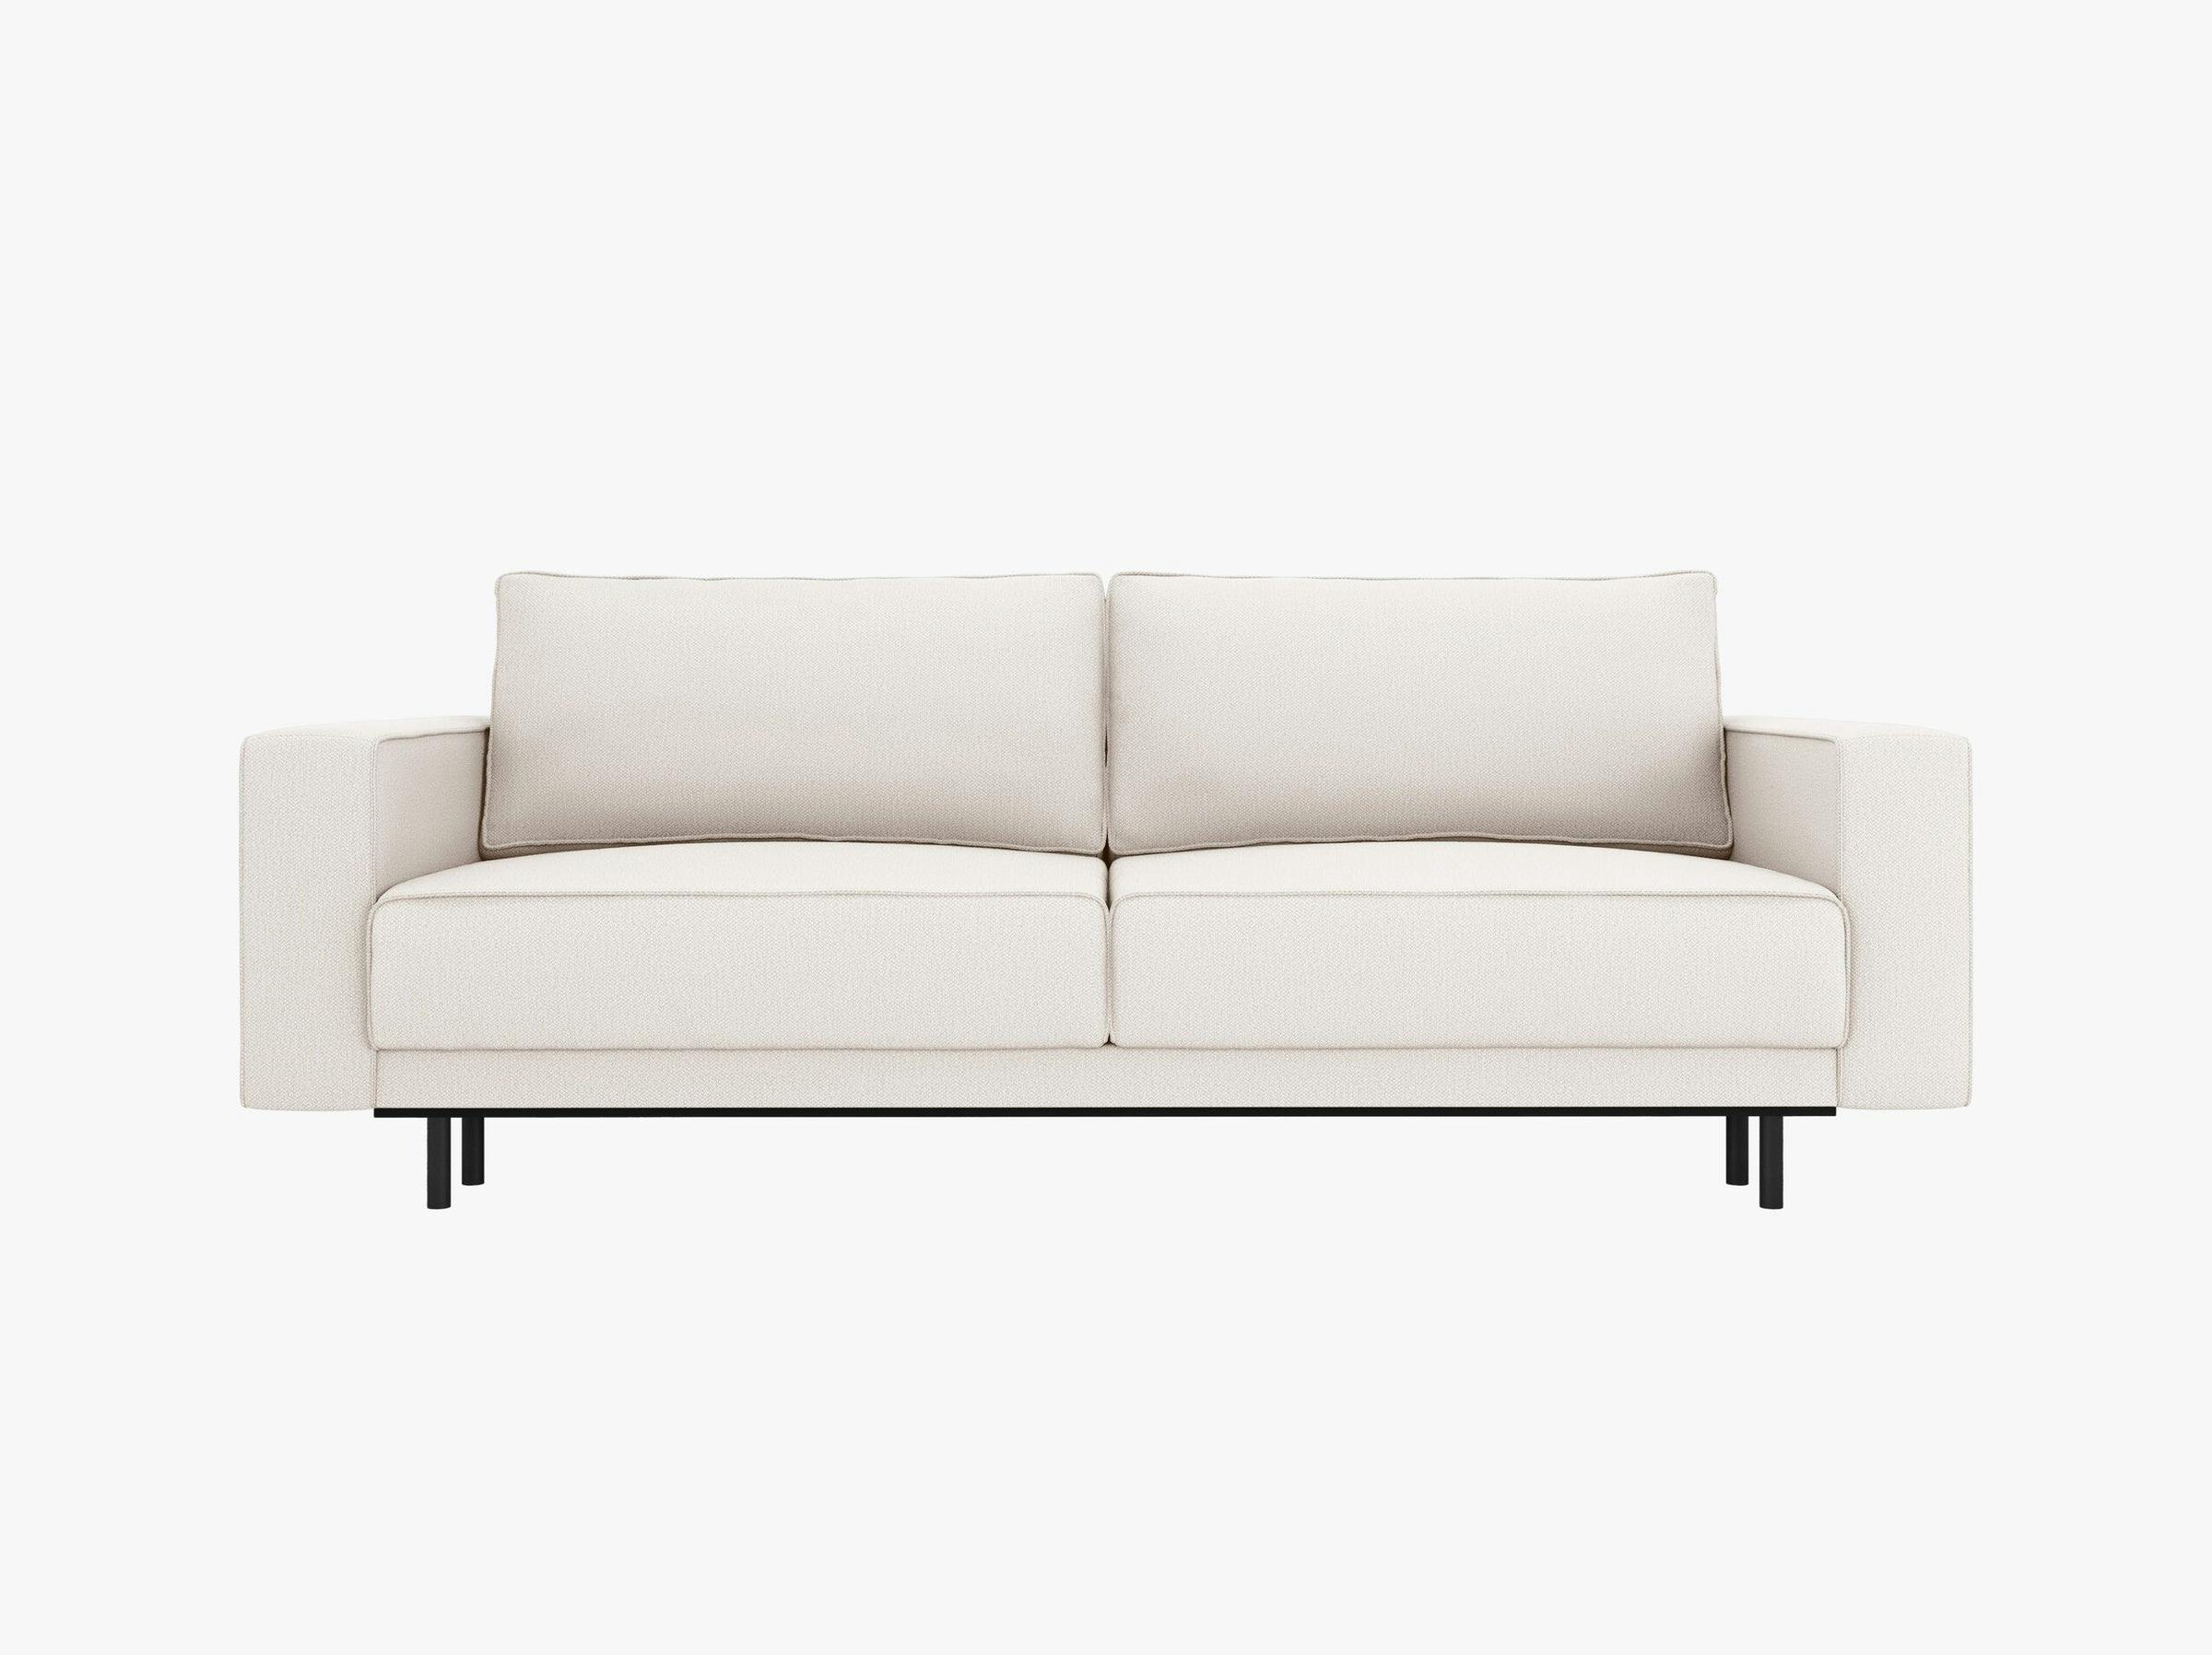 Caro sofás tejido estructurado beige claro